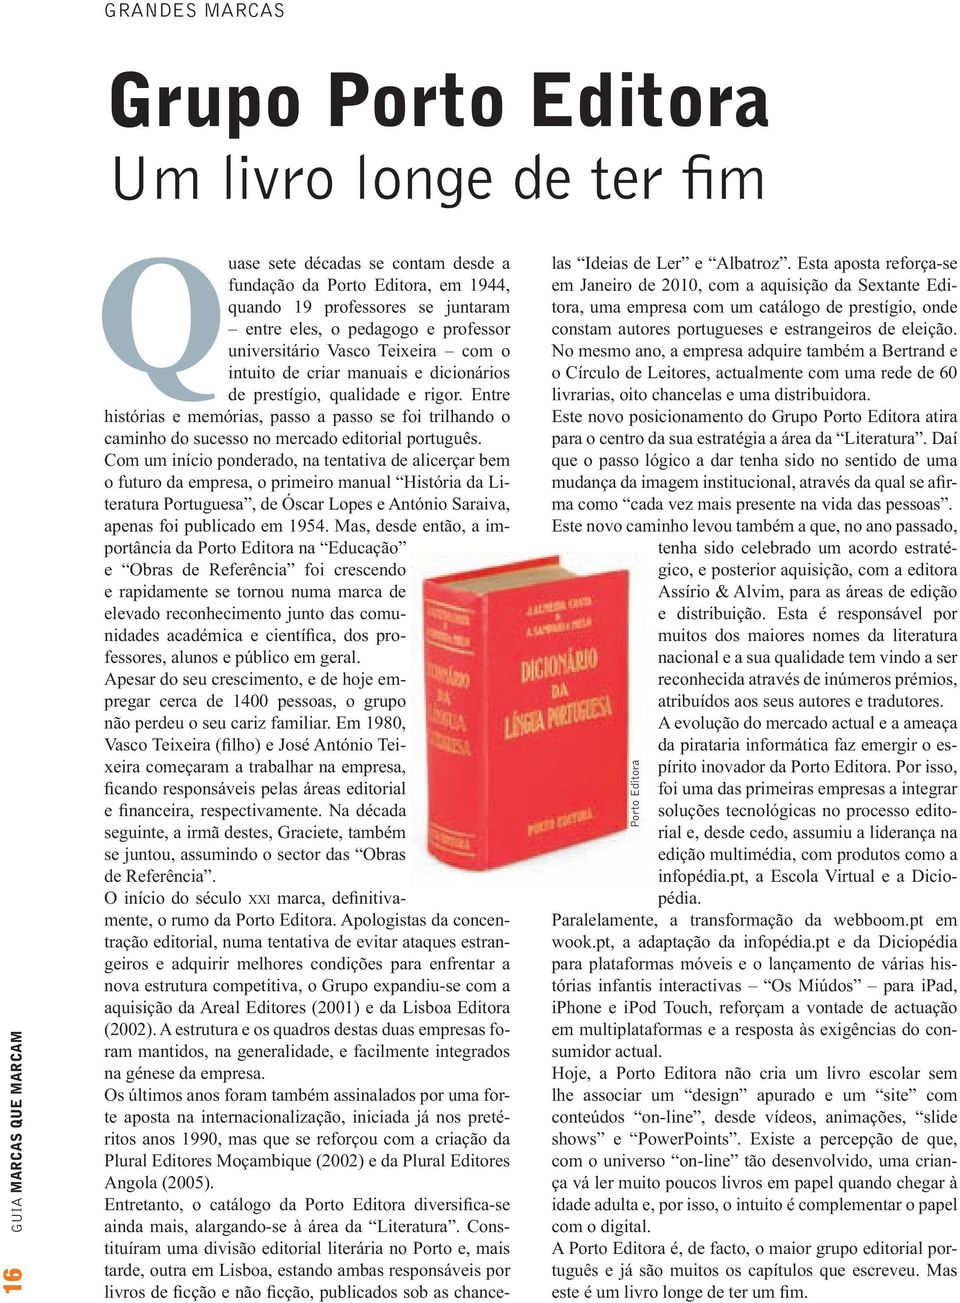 Entre histórias e memórias, passo a passo se foi trilhando o caminho do sucesso no mercado editorial português.